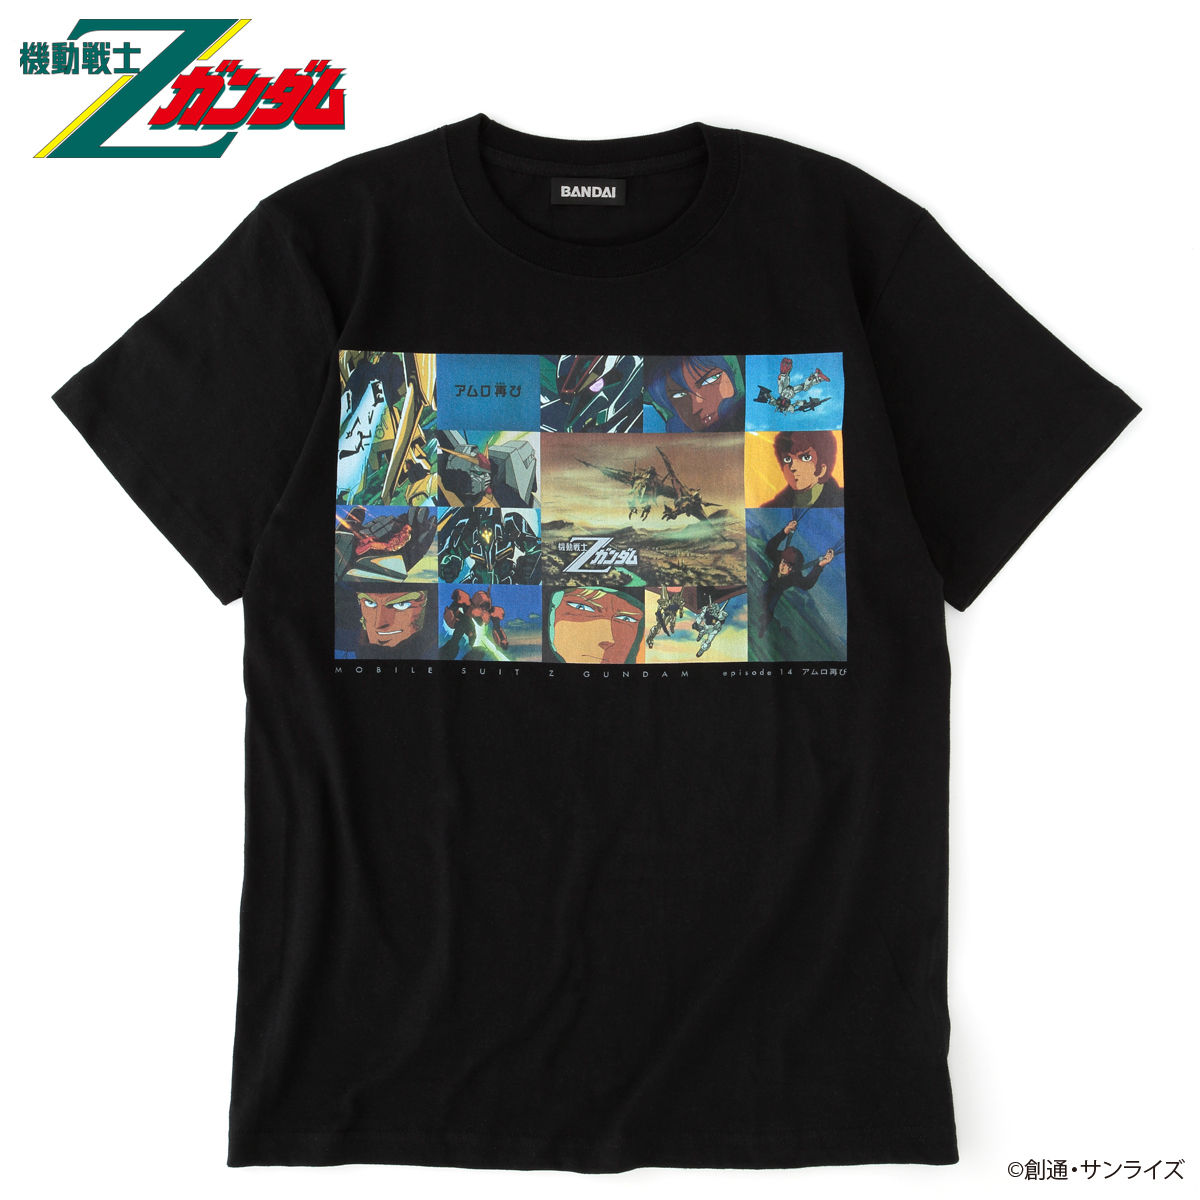 機動戦士zガンダム エピソードtシャツ Ep14 アムロ再び ガンダムシリーズ 趣味 コレクション プレミアムバンダイ公式通販